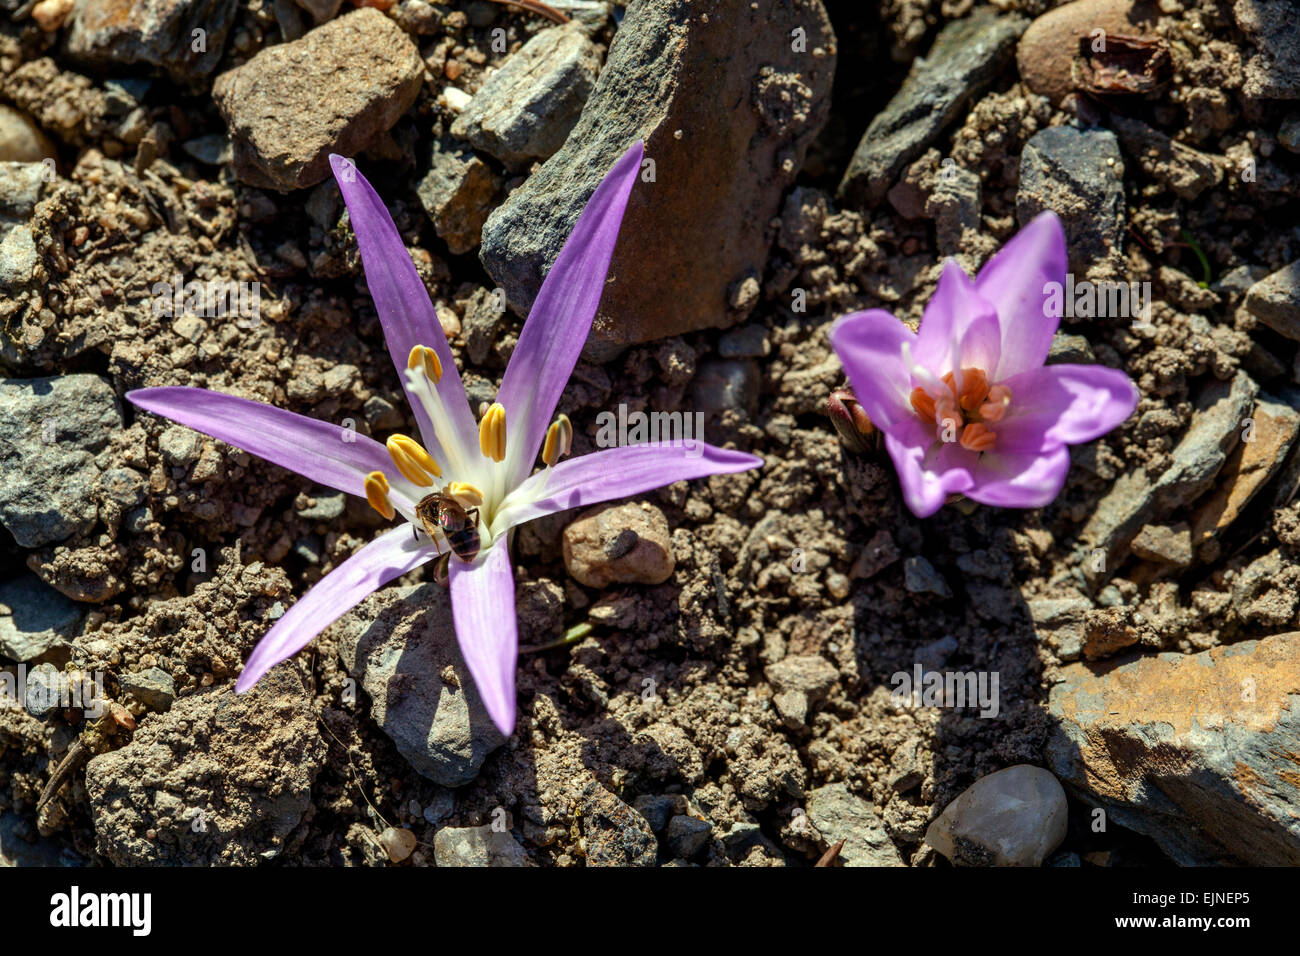 El azafrán de prado de primavera Bulbocodium vernum es bulbos alpinos para la flor de la abertura de la flor del jardín de rocas que crece en el suelo Foto de stock